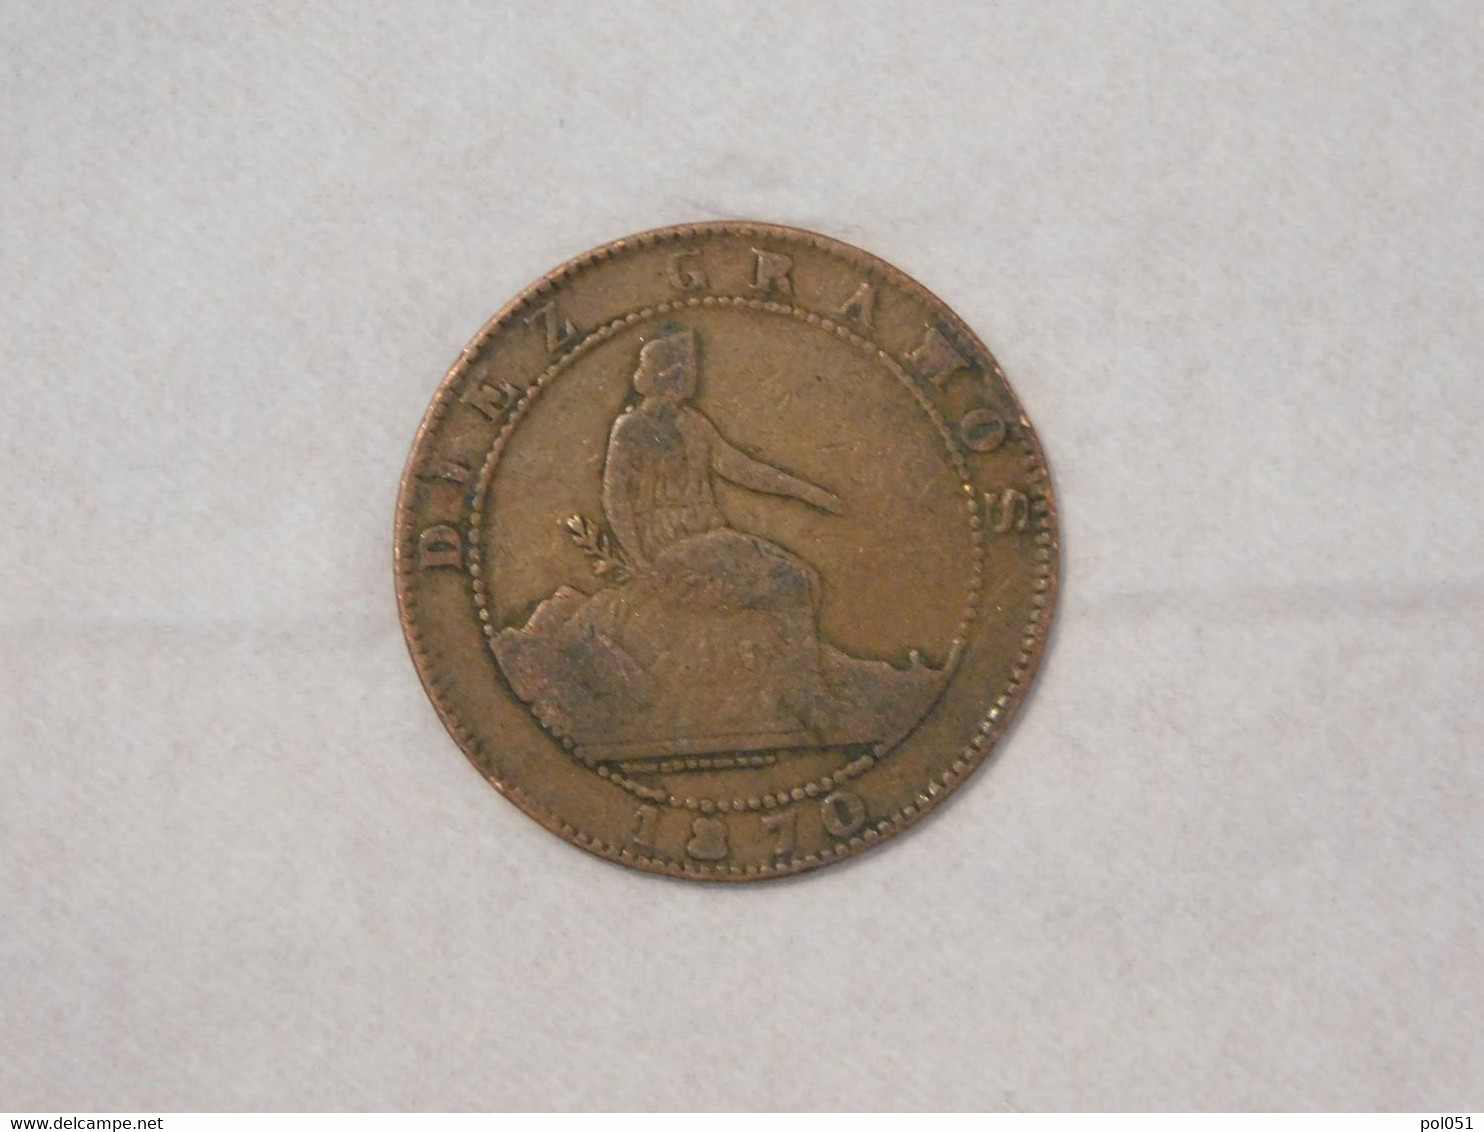 ESPAGNE SPAIN 10 DIEZ CENTIMOS CENT DE REAL 1870 - Münzen Der Provinzen